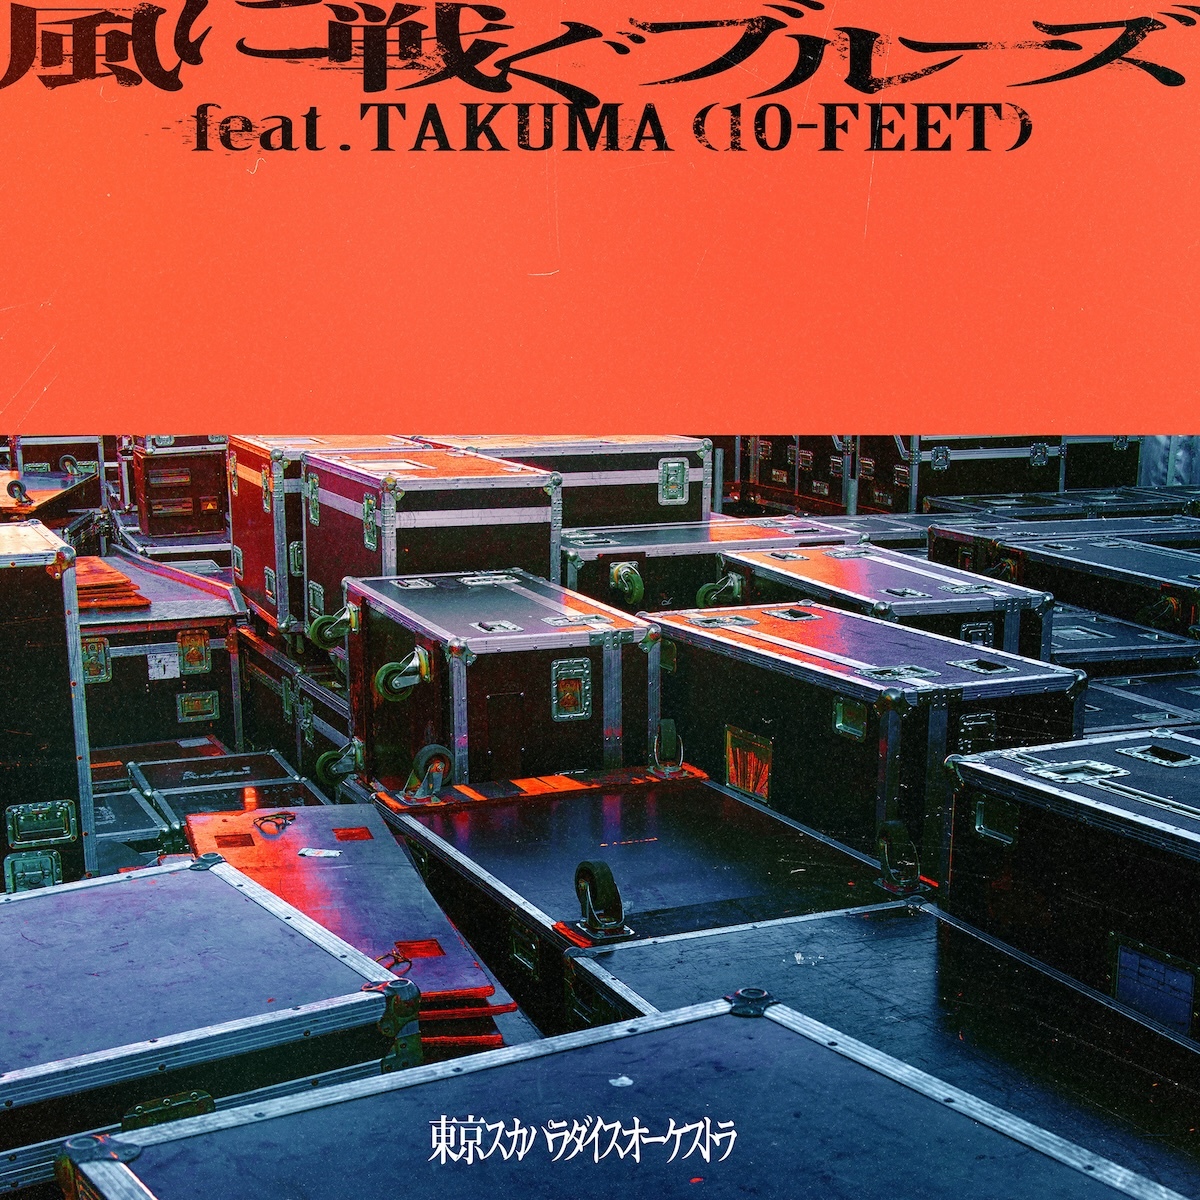 「風に戦ぐブルーズ feat.TAKUMA(10-FEET)」